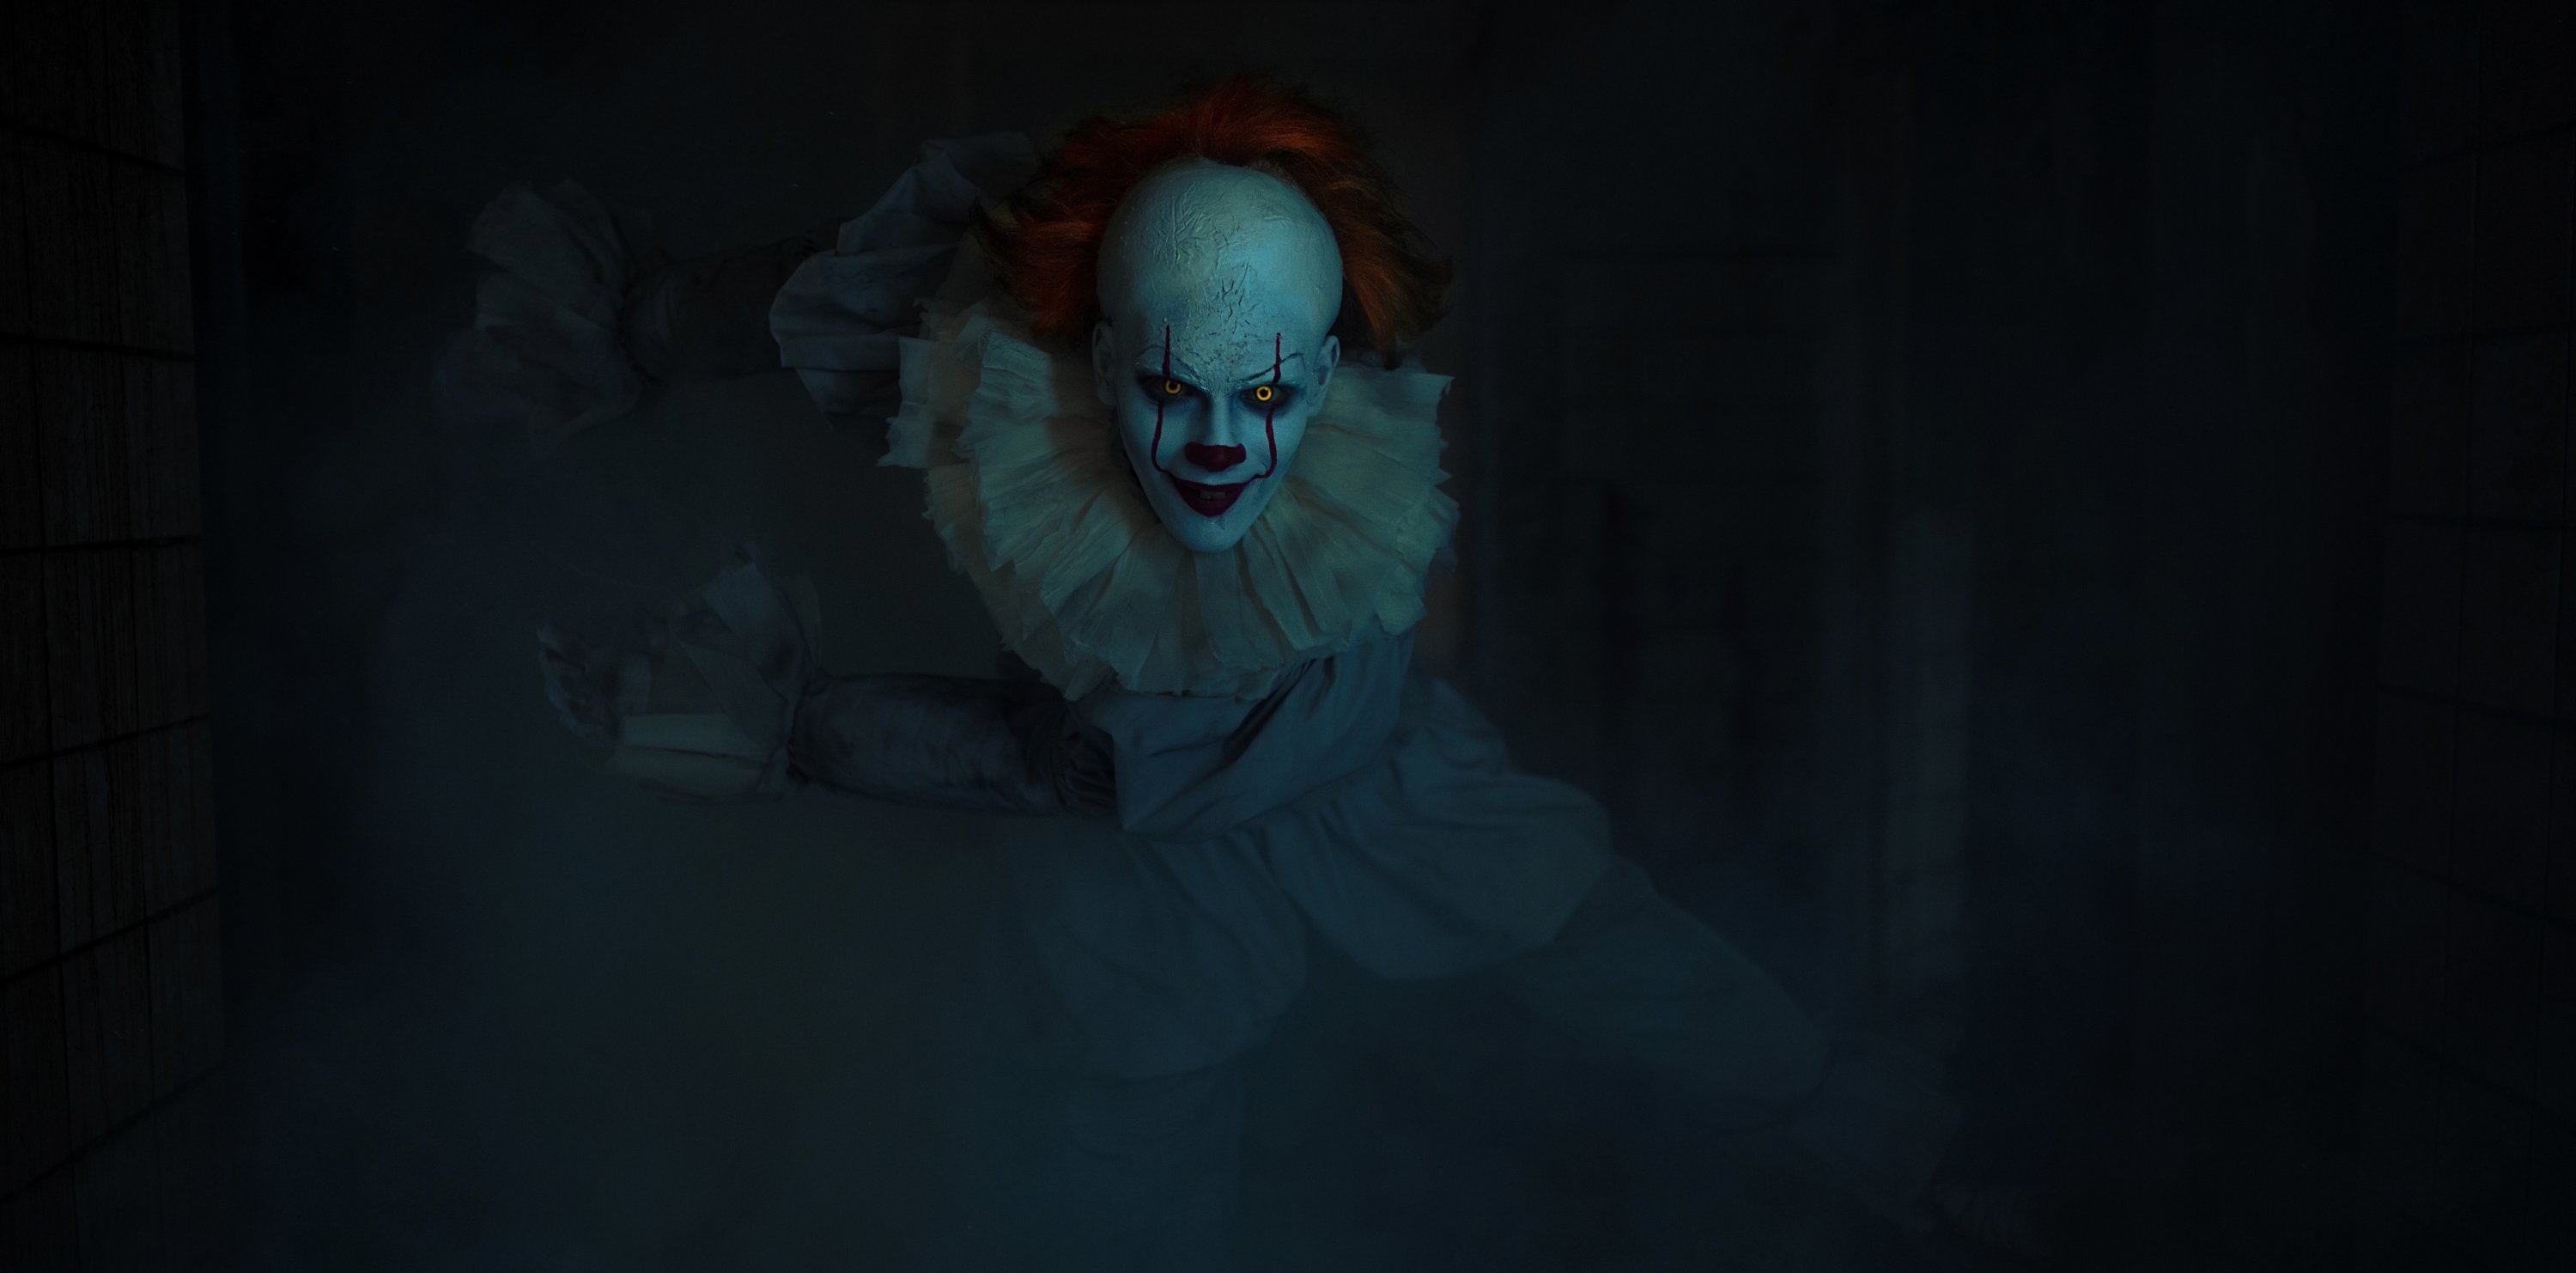 Seorang cosplayer berpakaian seperti Pennywise the Dancing Clown dari film horor 